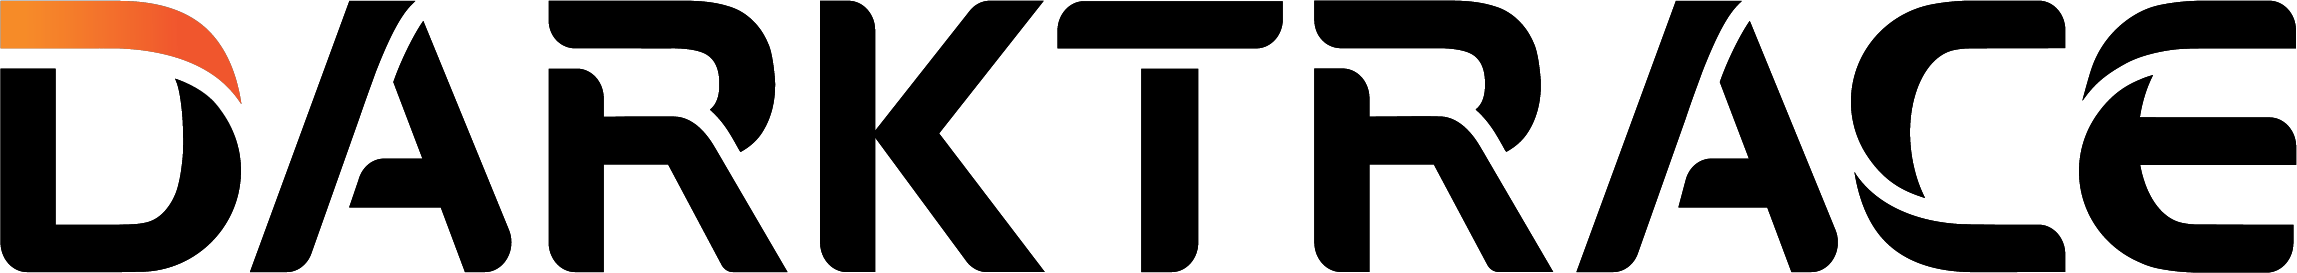 Logo: Darktrace